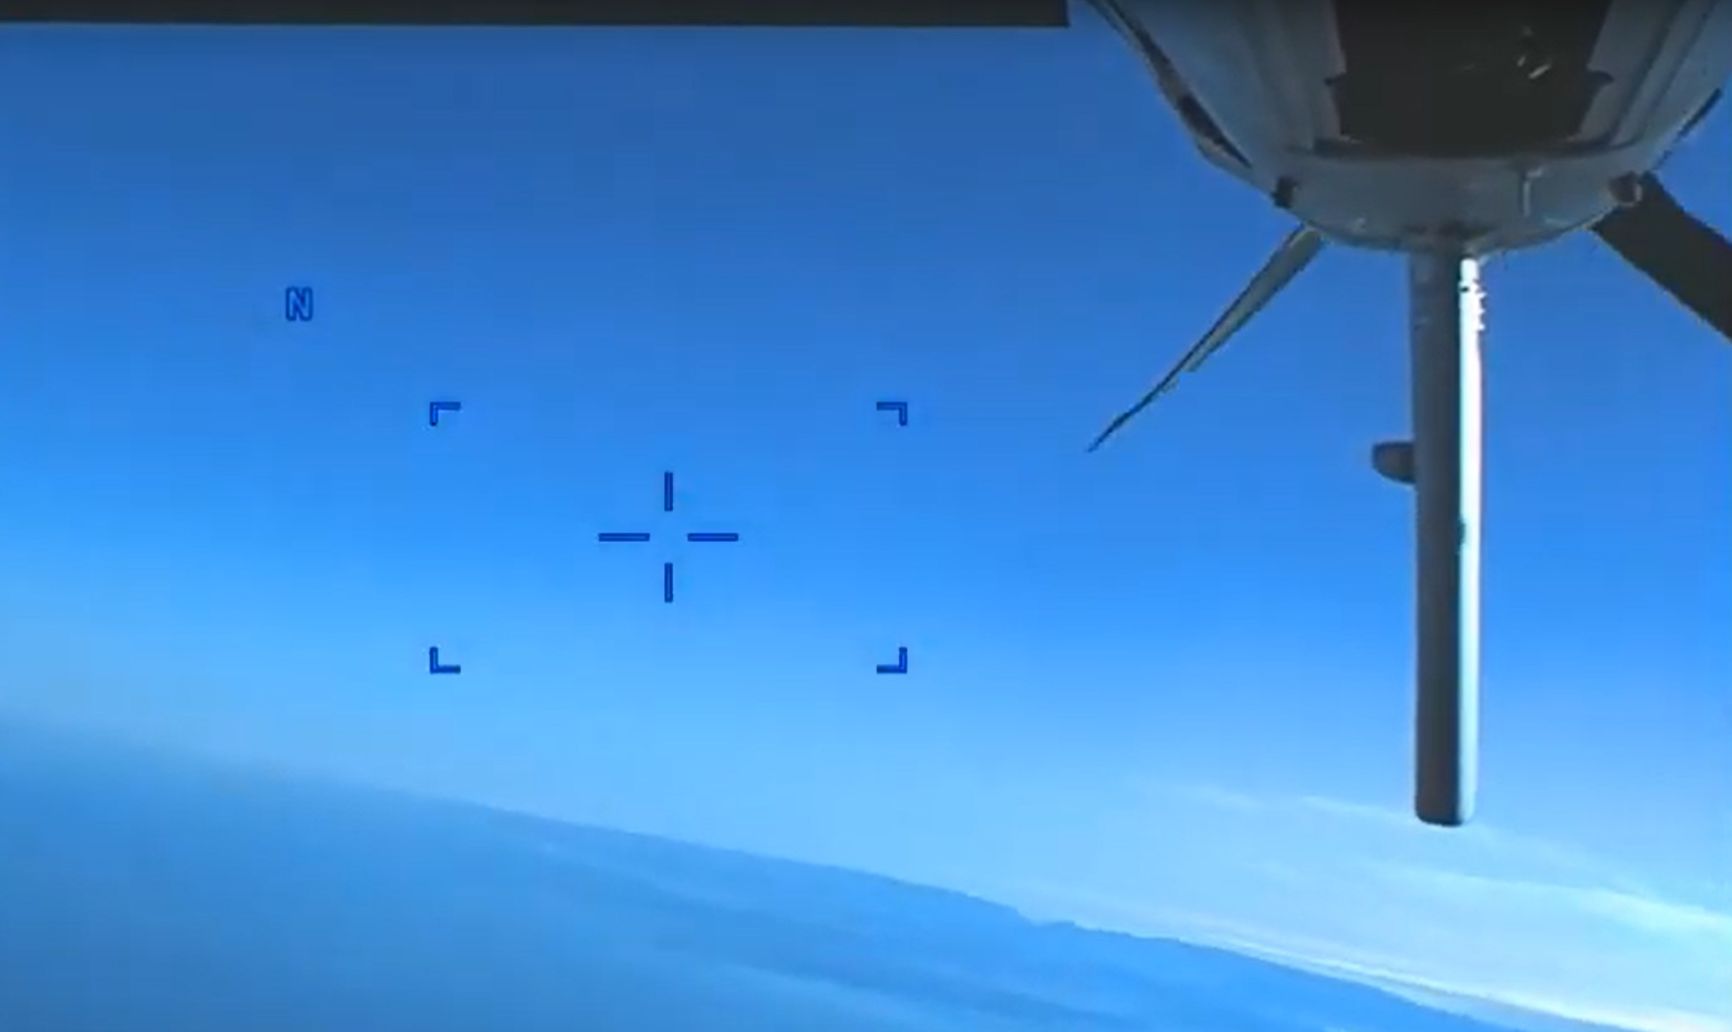 РИА «Новости» опубликовало доказательство столкновения Су-27 с американским дроном, но продолжает утверждать, что столкновения не было